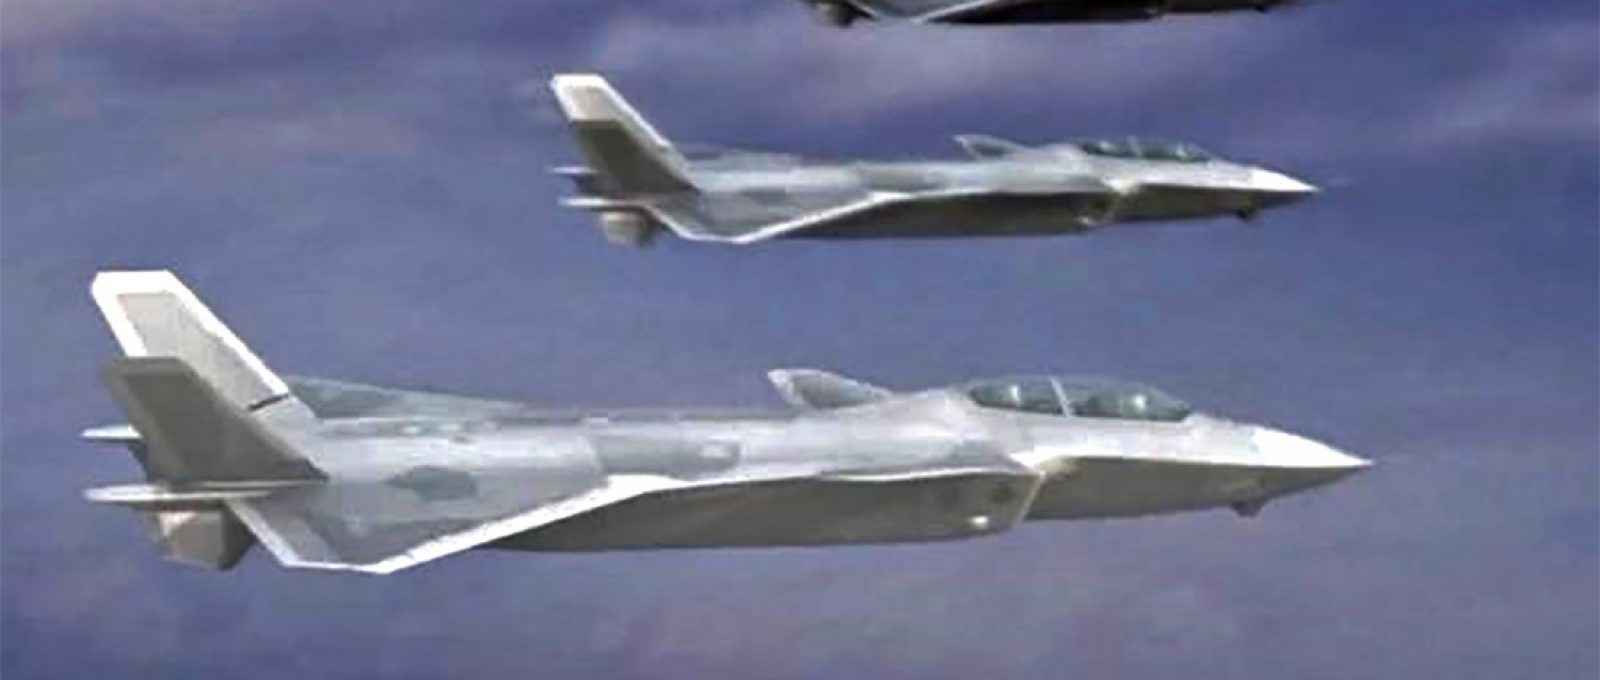 Variante biposto do J-20 em imagem gerada por computador, em vídeo divulgado pela AVIC (Aviation Industry Corp of China) (Imagem: captura de tela do vídeo AVIC/Airrecognition.com).